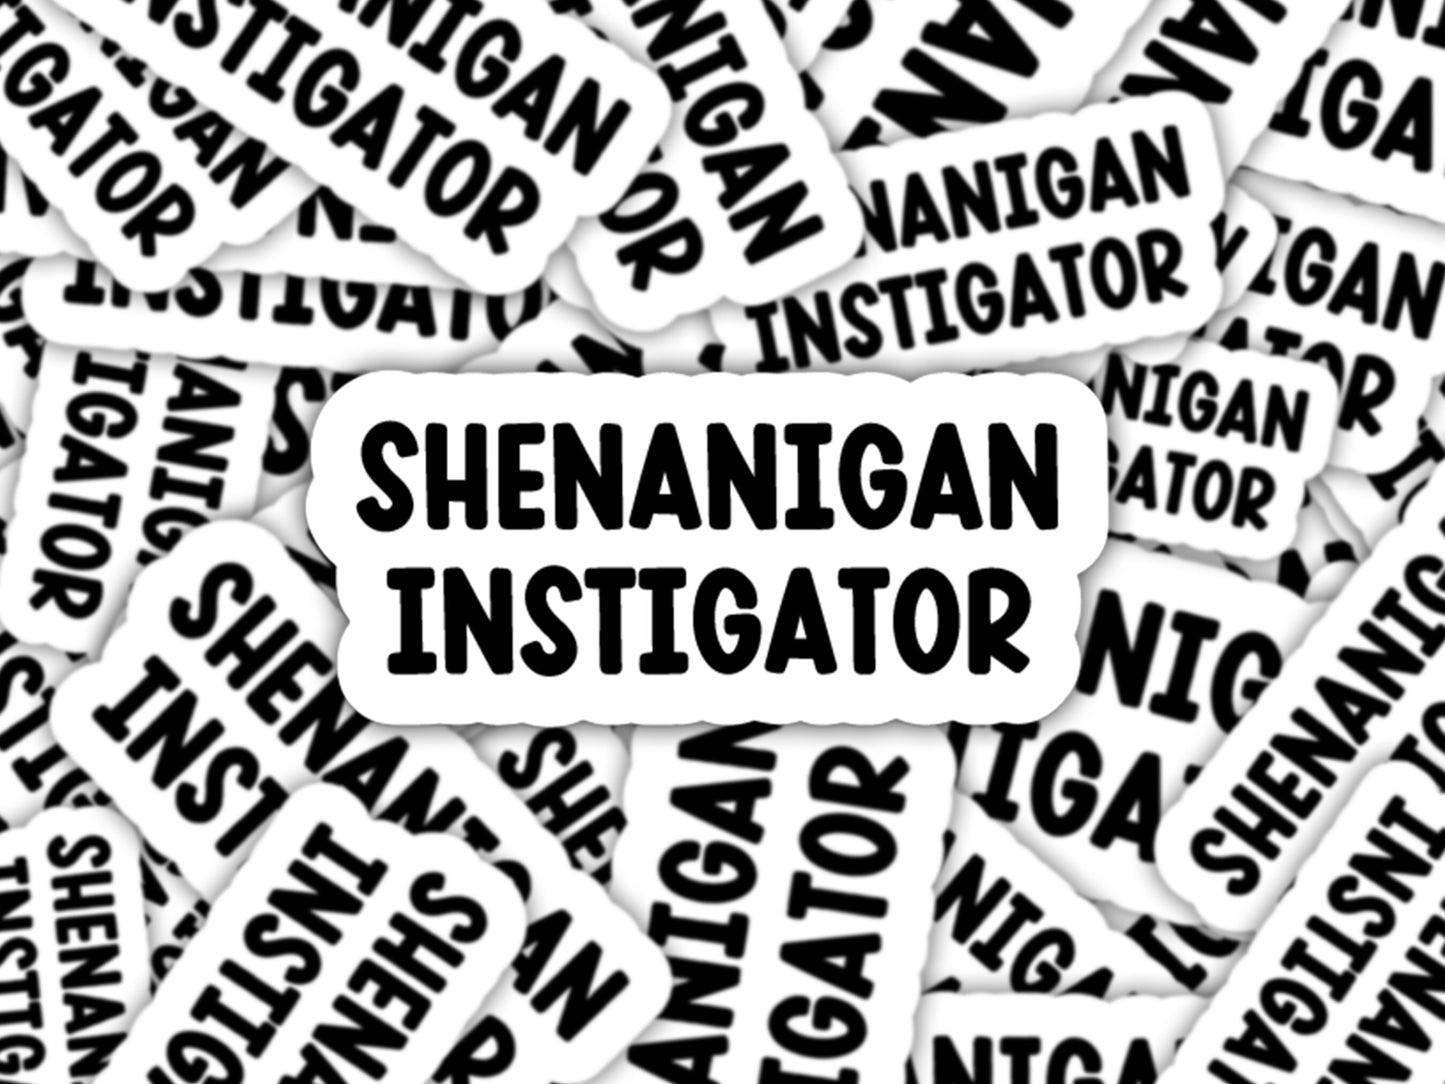 shenanigan instigator sticker, best friend gifts, bachelorette party stickers, gifts for her, shenanigans coordinator, bestie stickers